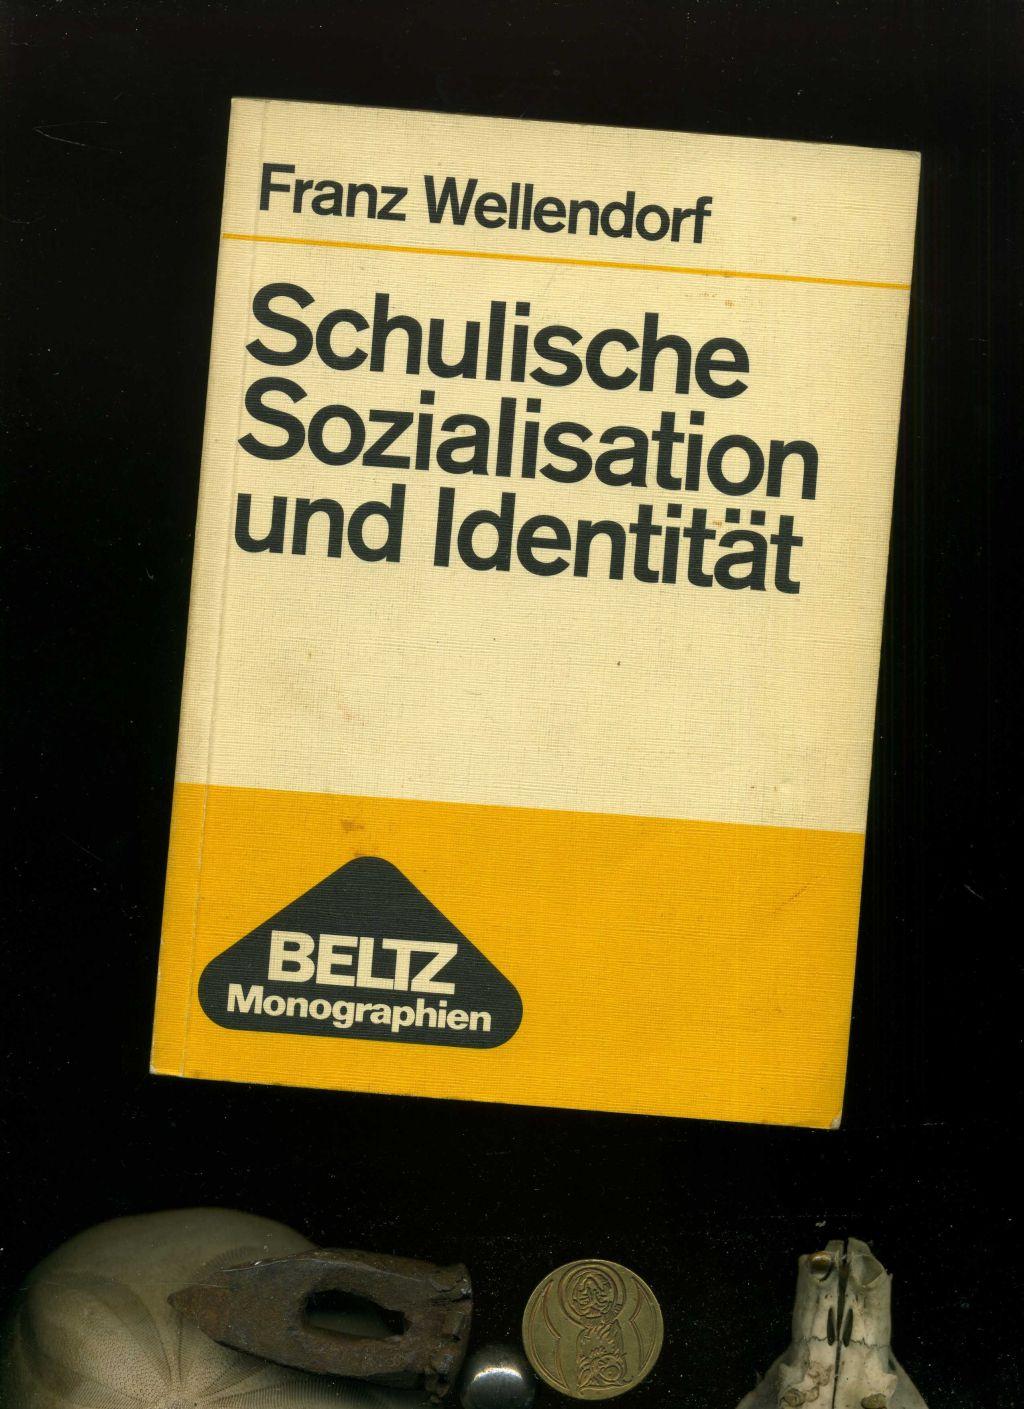 Schulische Sozialisation und Identität : zur Sozialpsychologie der Schule als Institution. Signiert vom Autor. - Franz Wellendorf